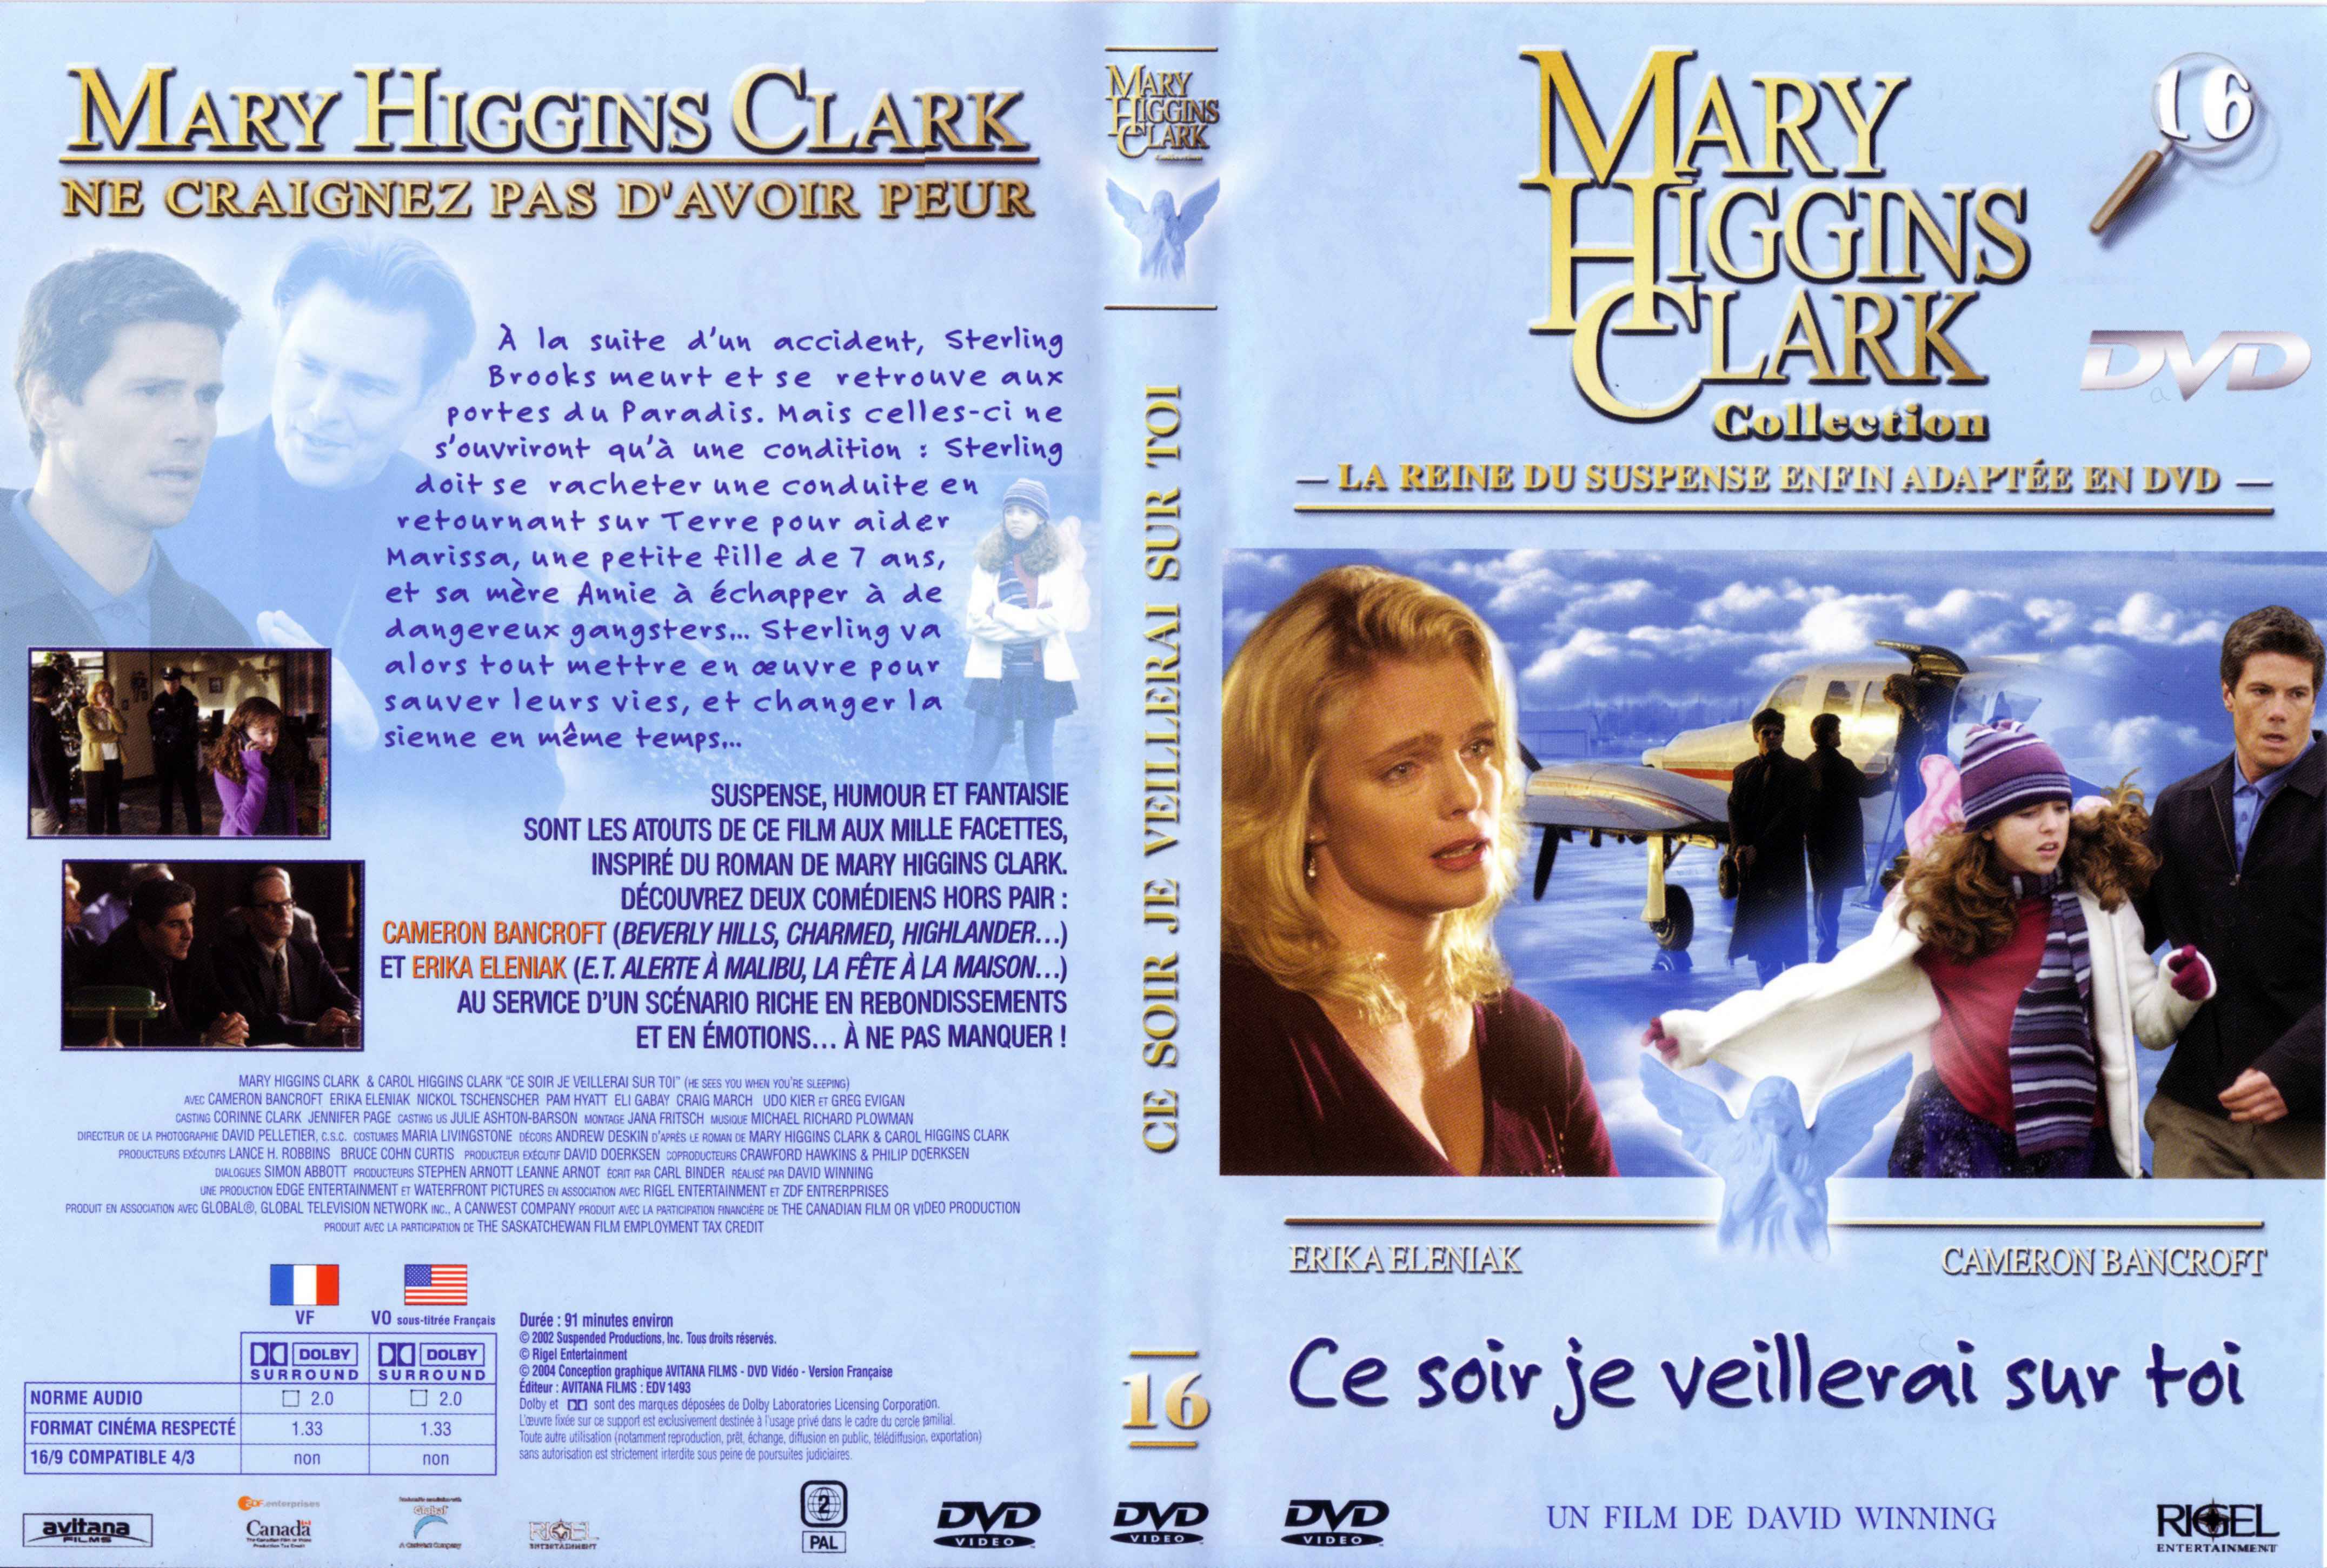 Jaquette DVD de Mary Higgins Clark vol 16 - Ce soir je veillerai sur toi - Cinéma Passion